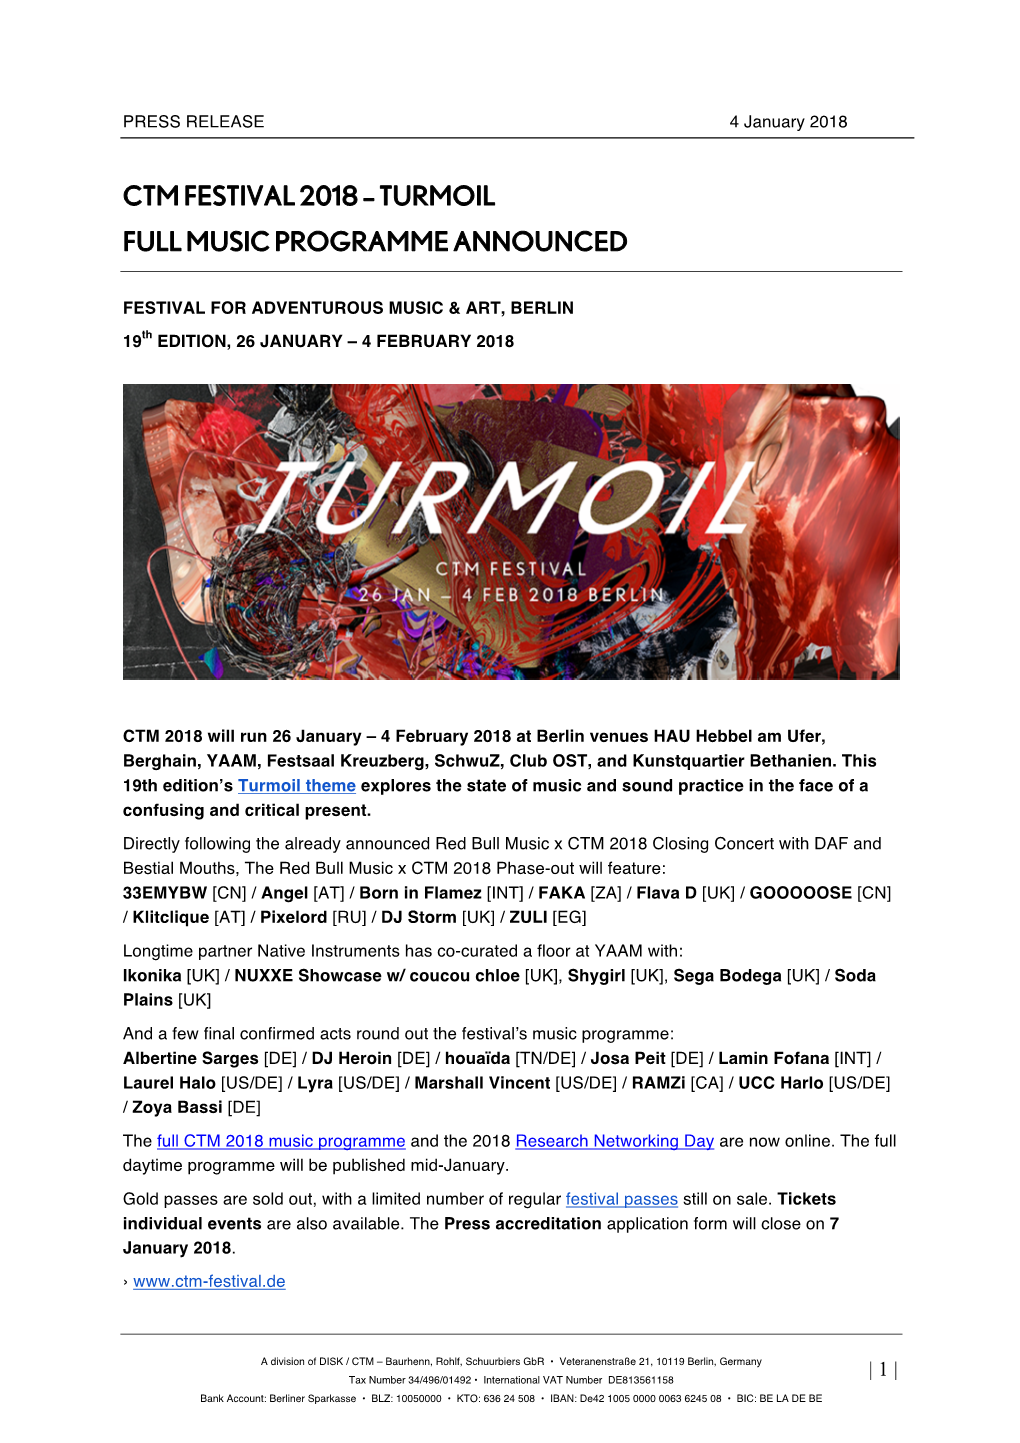 Turmoil Full Music Programme Announced